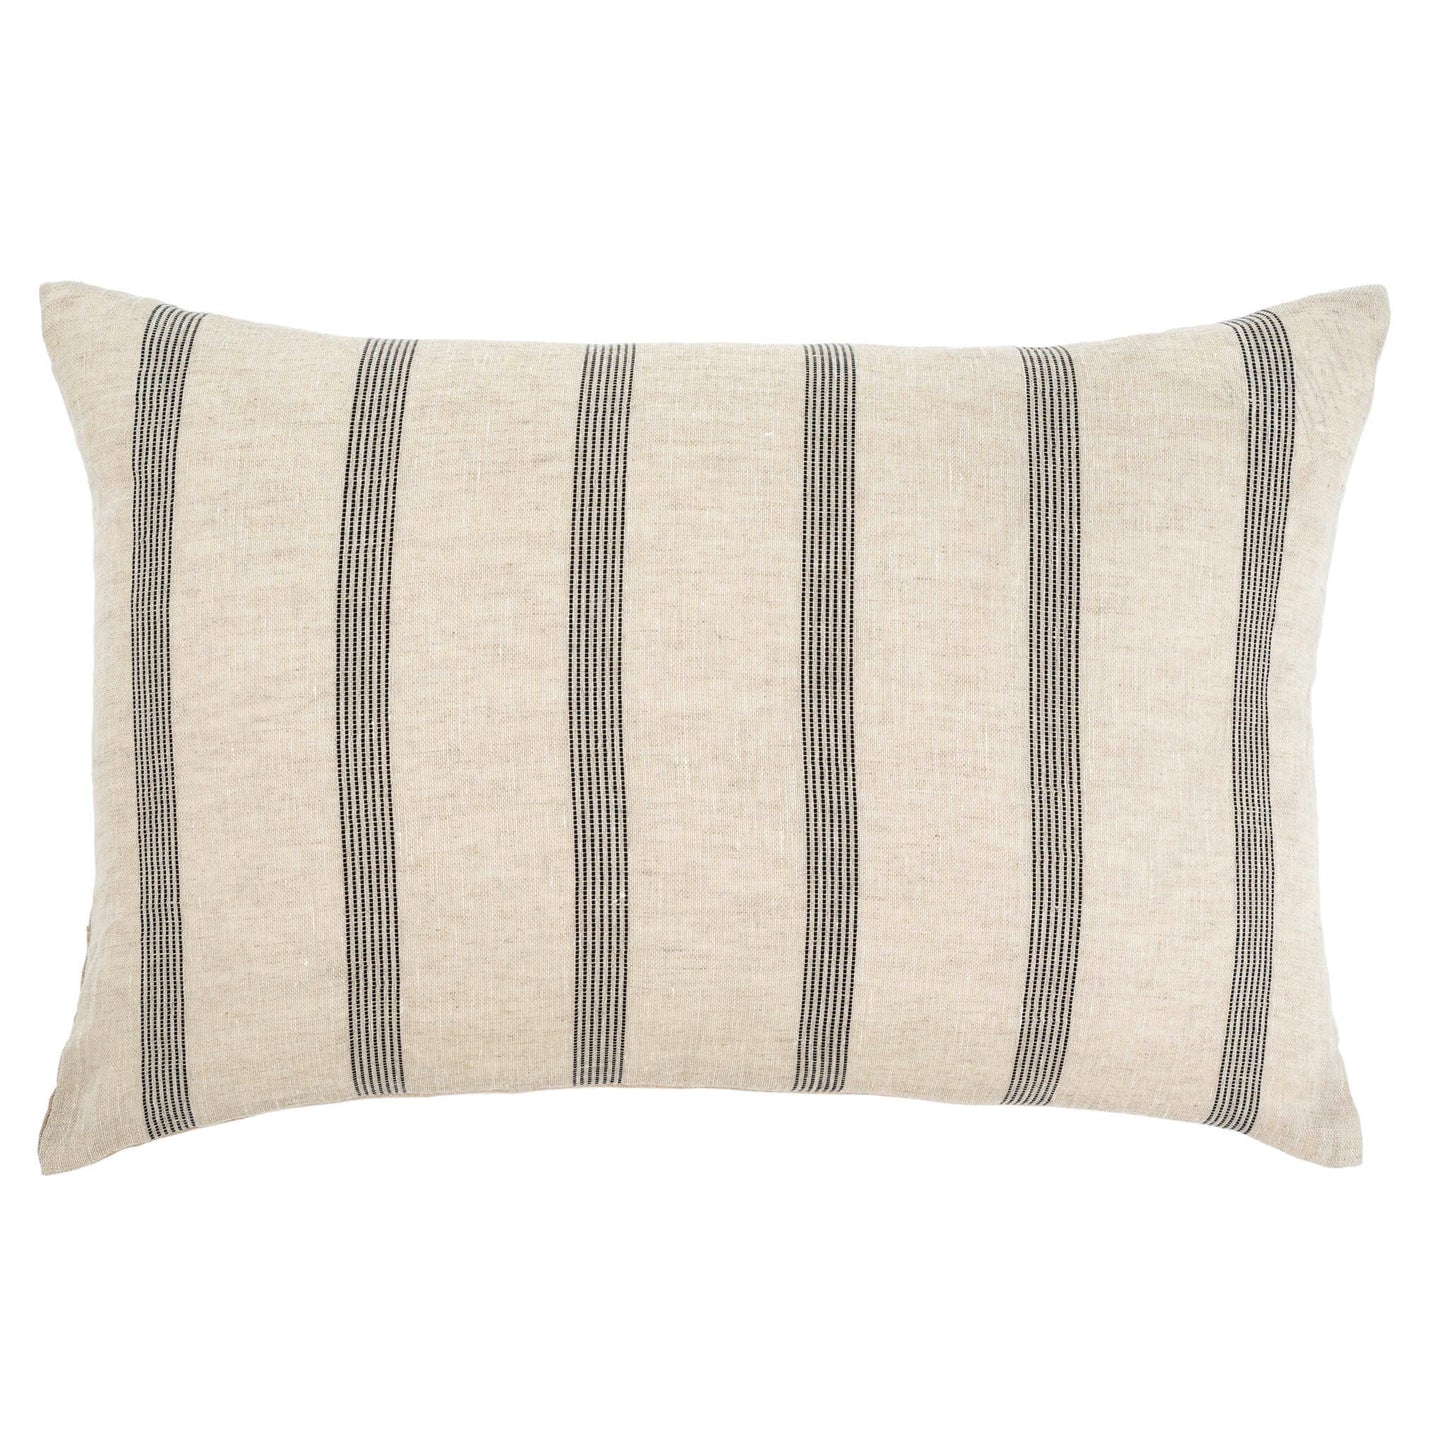 Valley Stripe Linen 16x24 Pillow